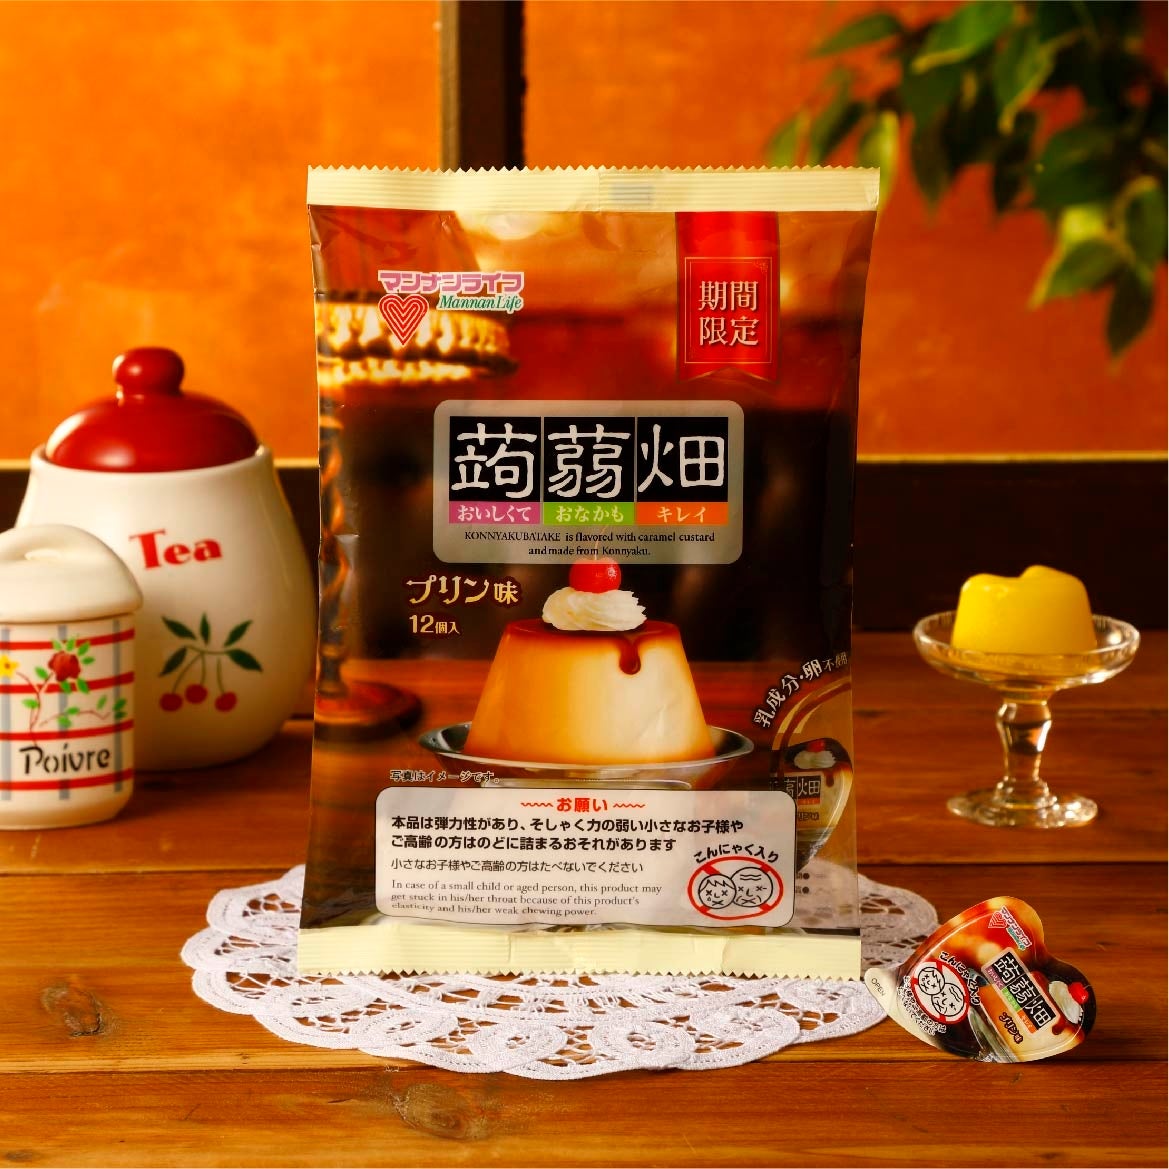 日本最大級のコーヒー専門通販「PostCoffee」、新たに国内外の人気コーヒーショップ11社を追加。計50社以上のロースターラインナップへ拡充。